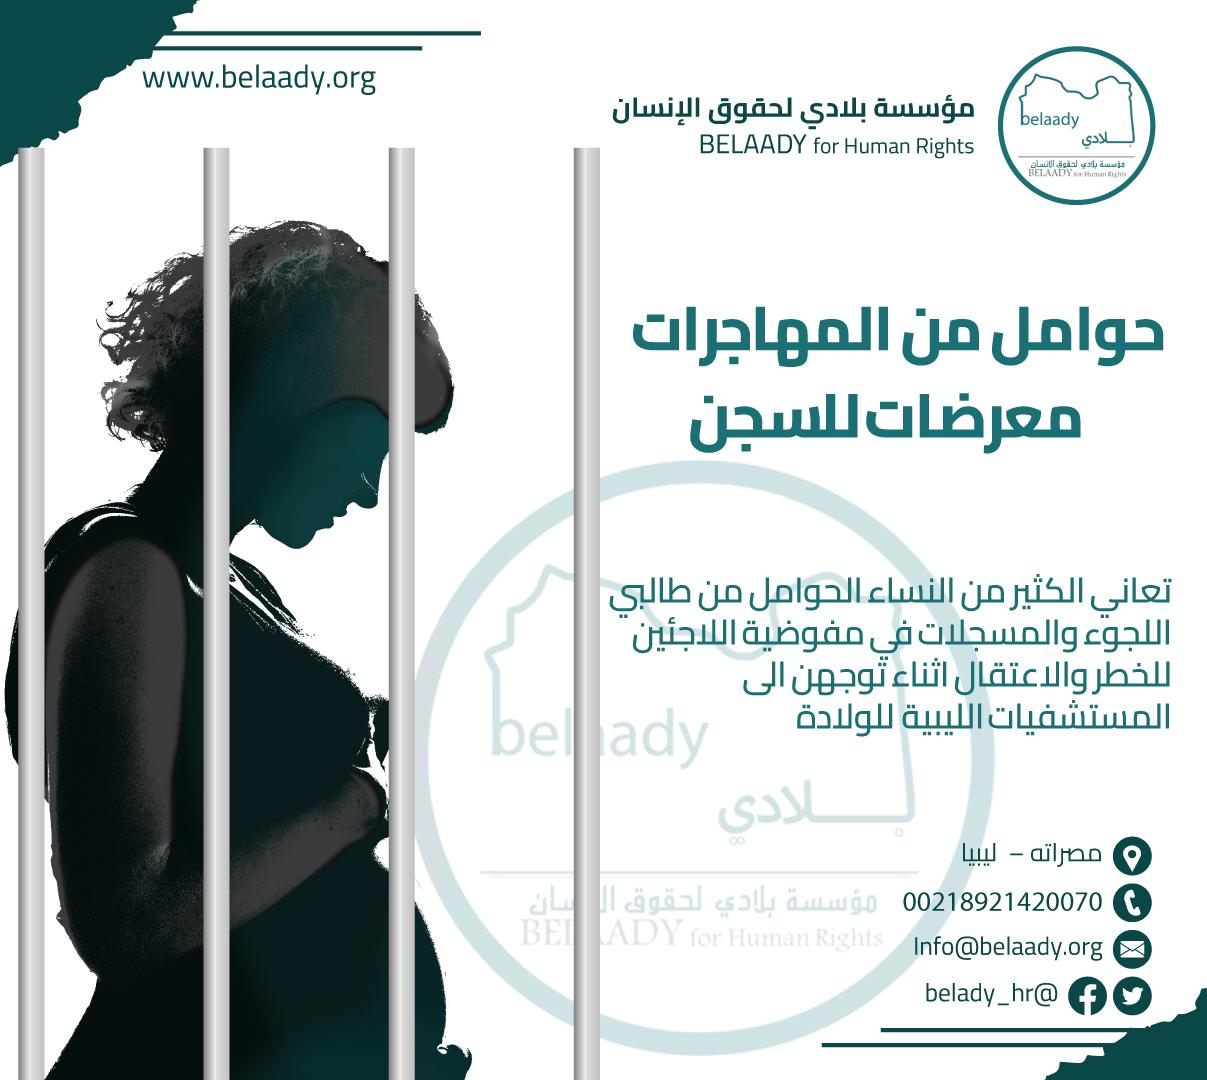 النساء الحوامل من المهاجرات يتعرضن لاعتقال داخل المستشفيات الليبية العامة والخاصة